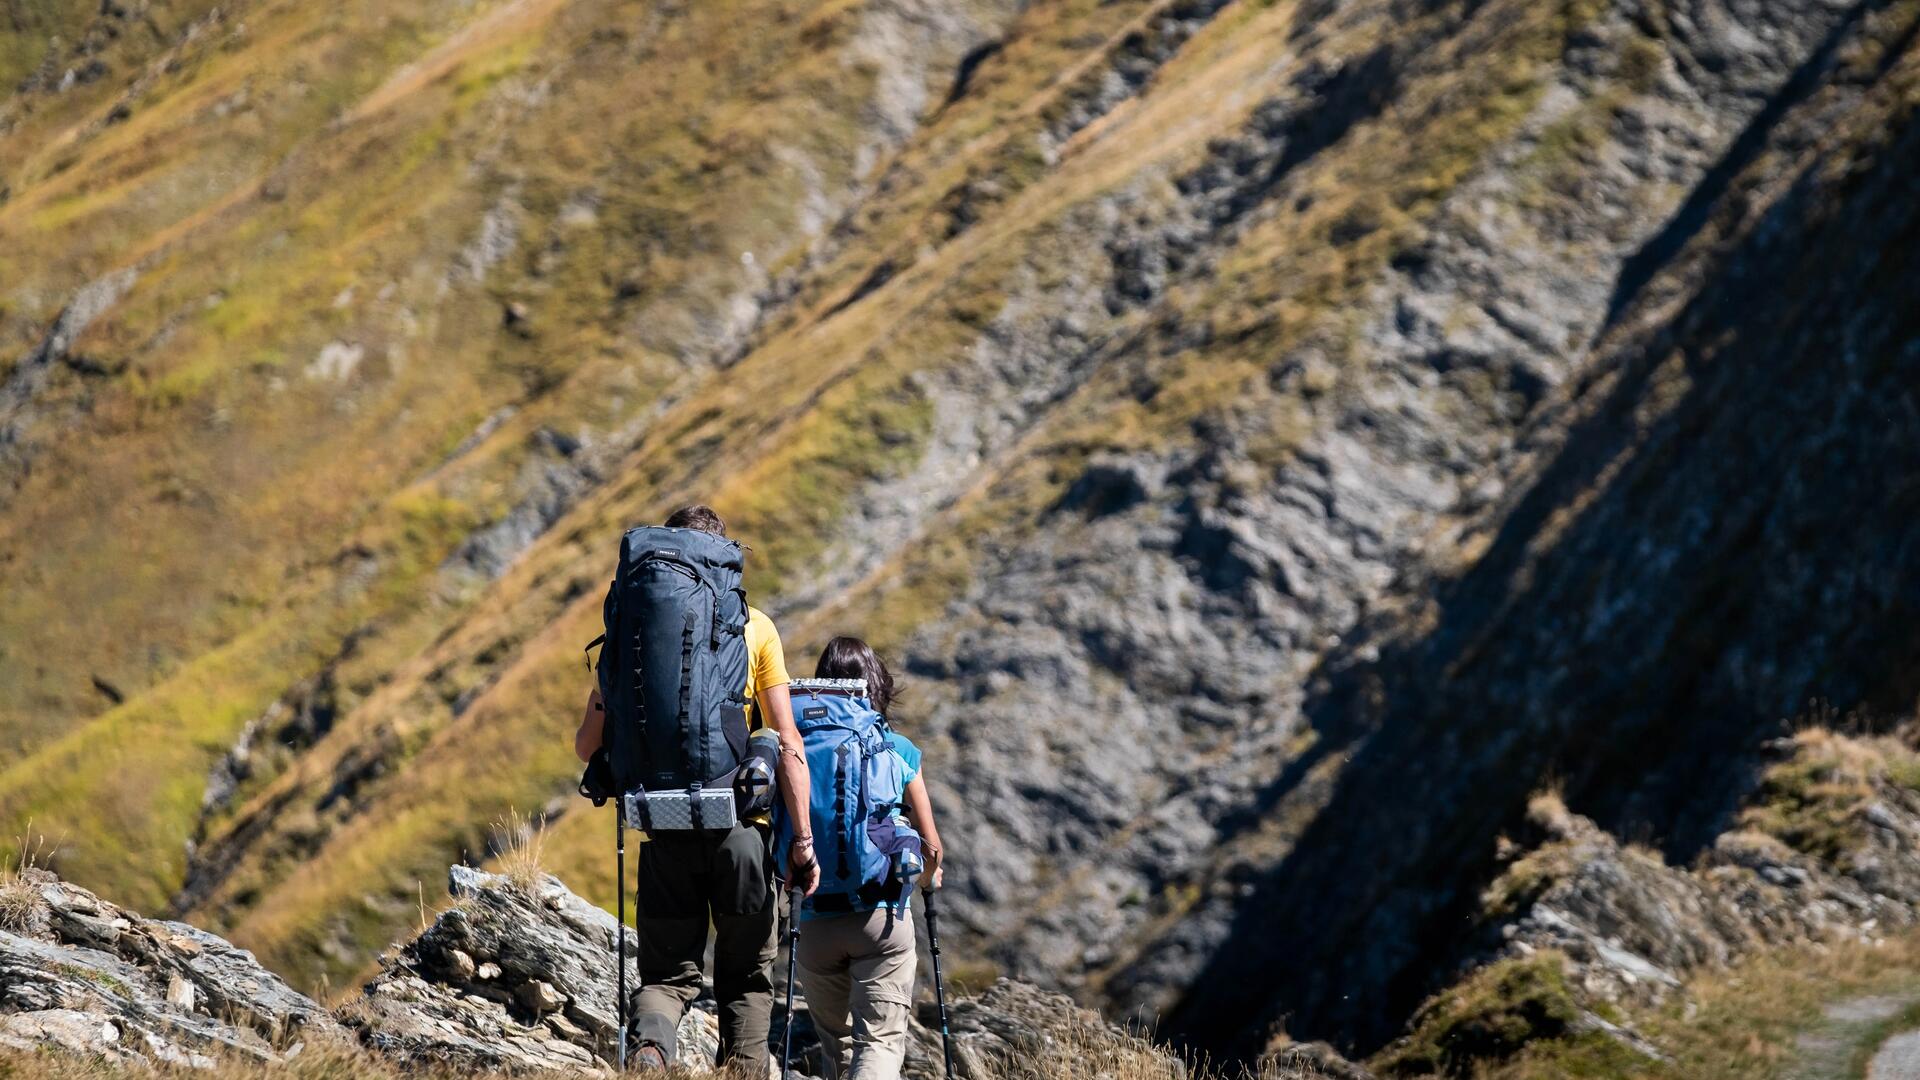 kobieta i mężczyzna wędrujący po górach z plecakami turystycznymi i kijami trekkingowymi